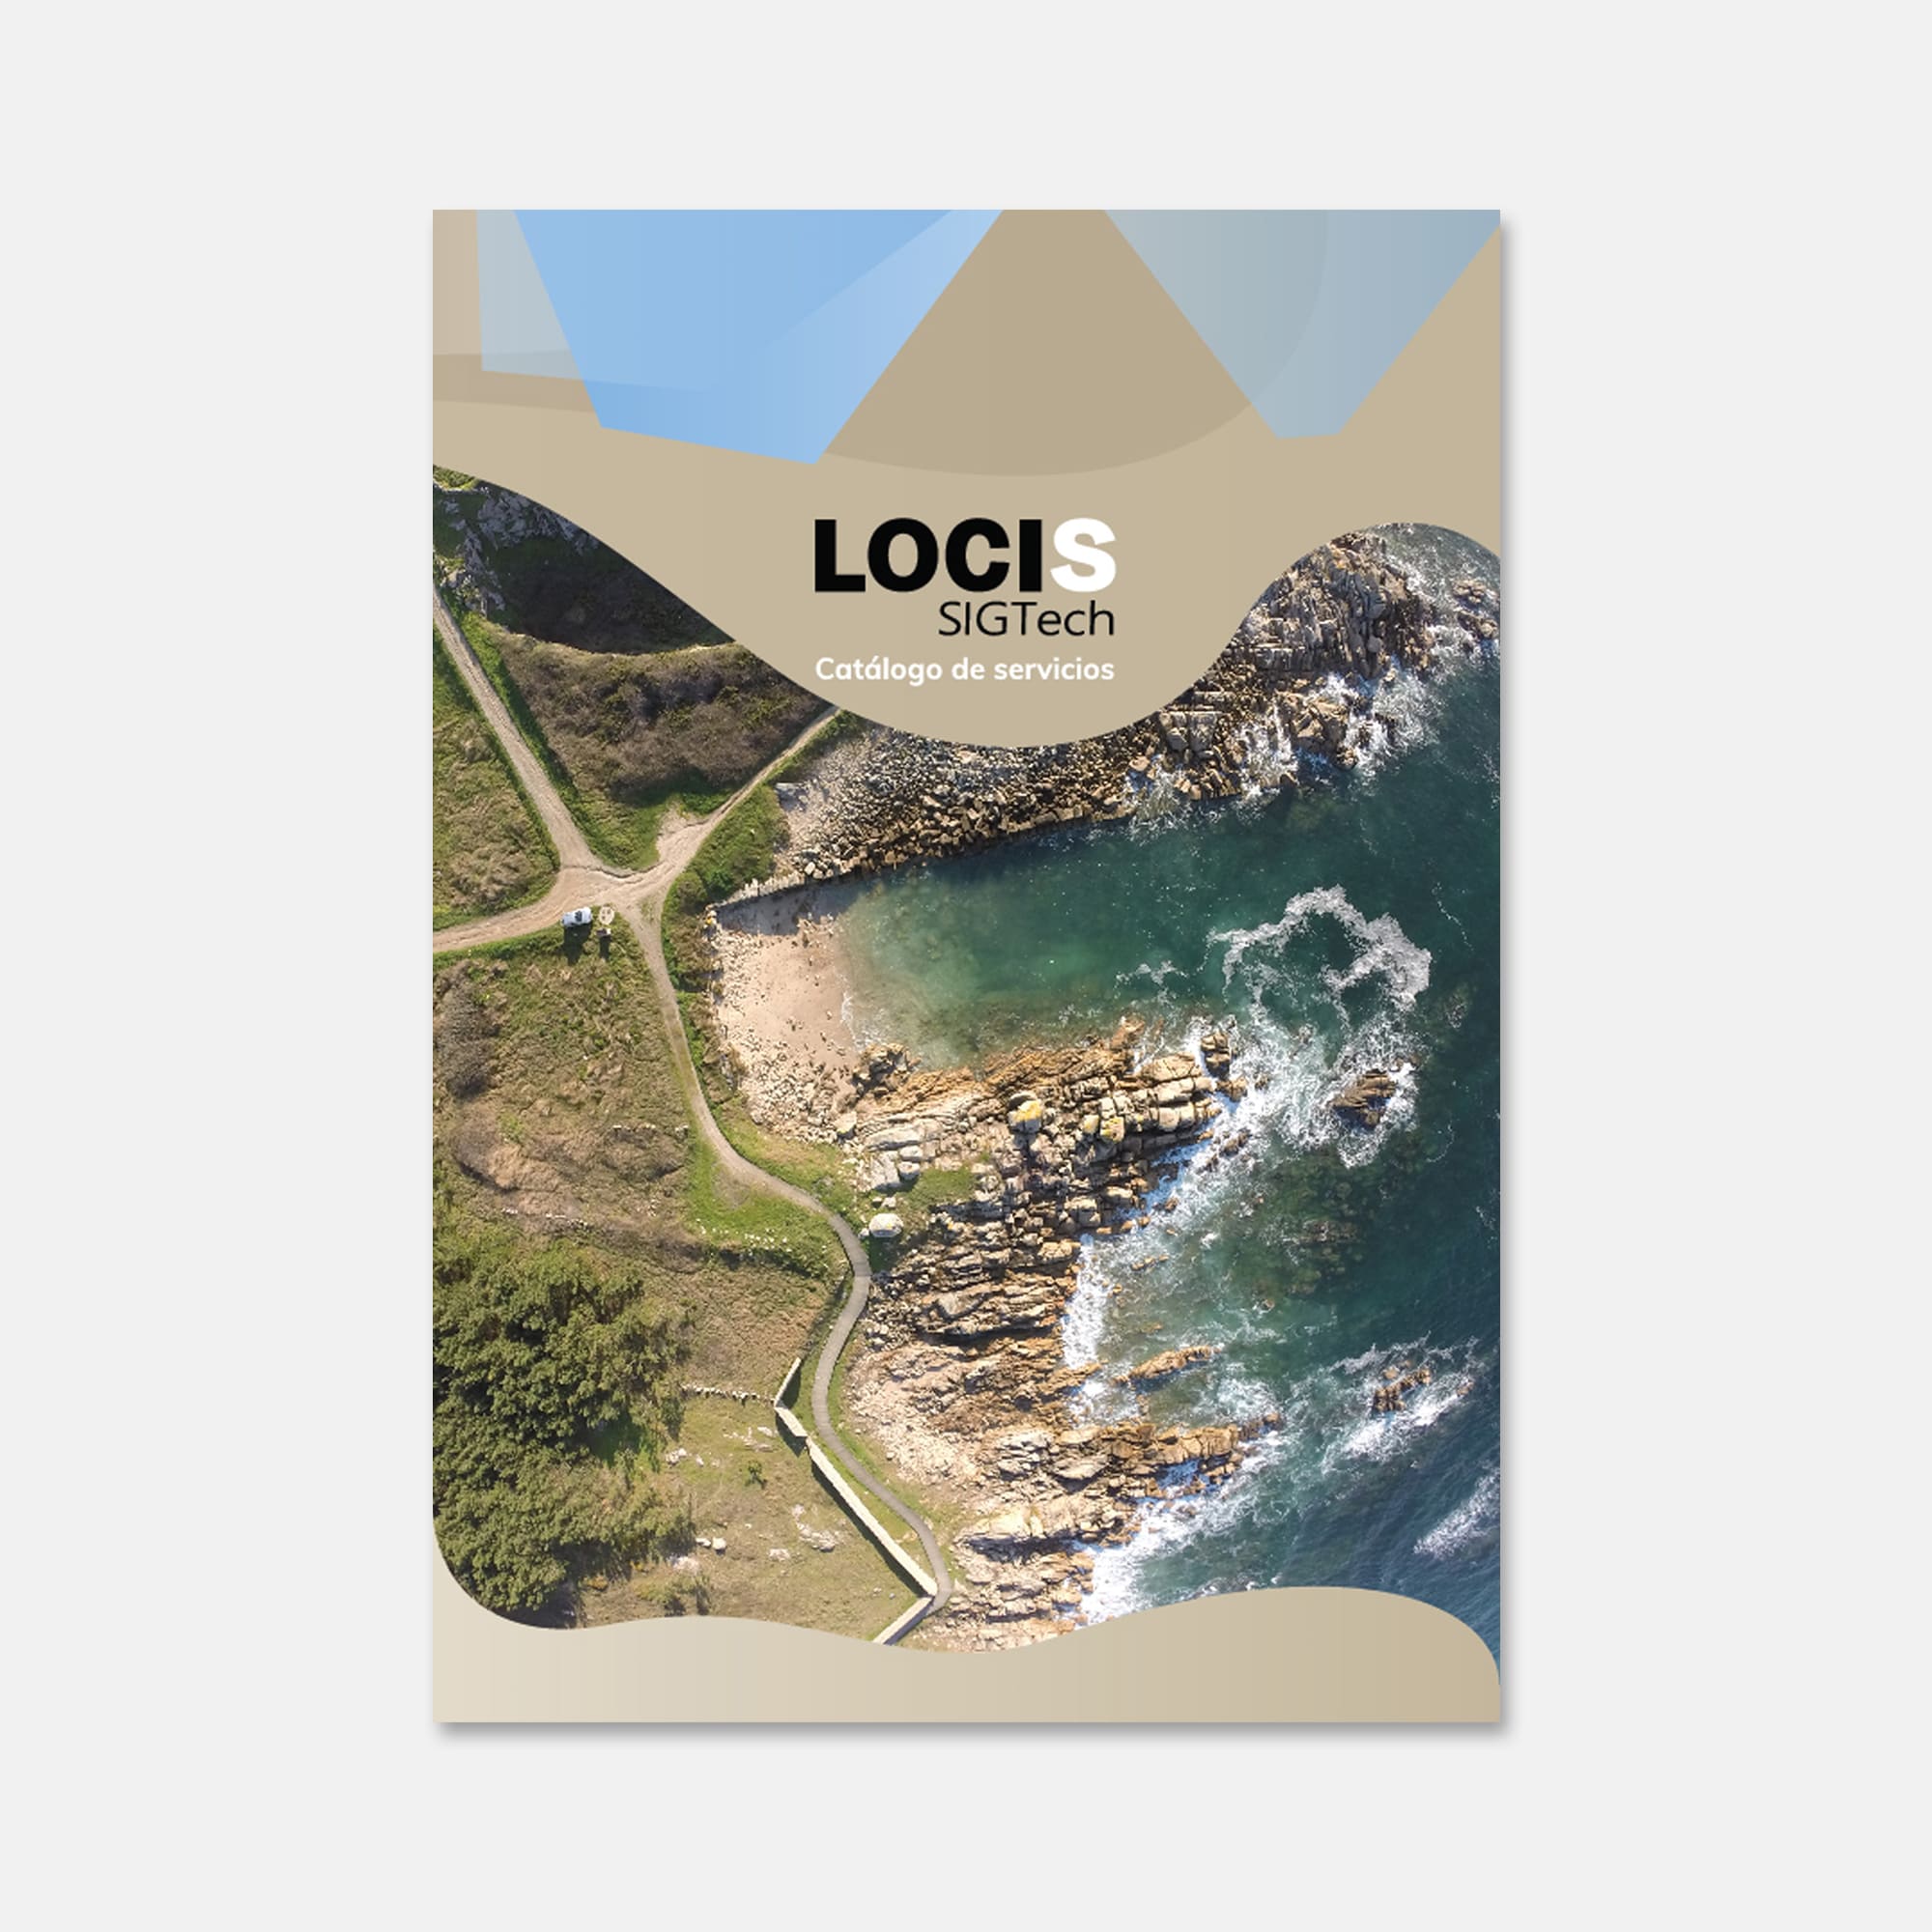 Diseño de folleto para Locis. Catálogo de servicios de la empresa Locis